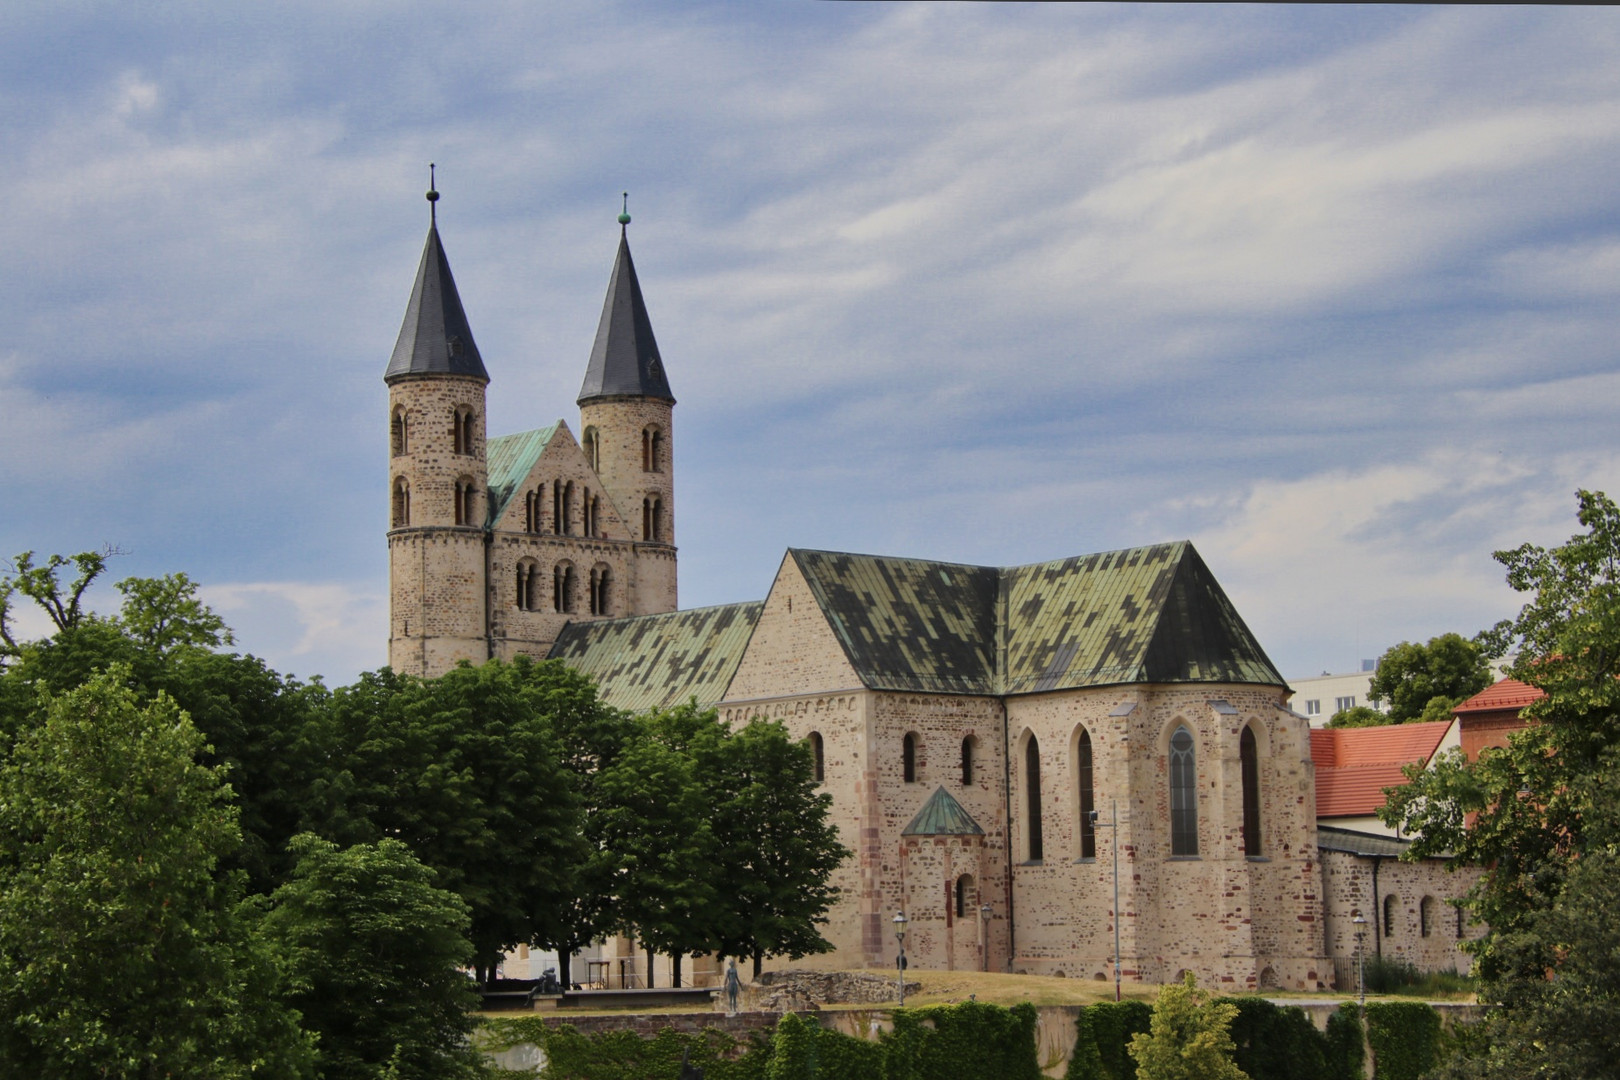 Kloster Unser Lieben Frauen Magdeburg